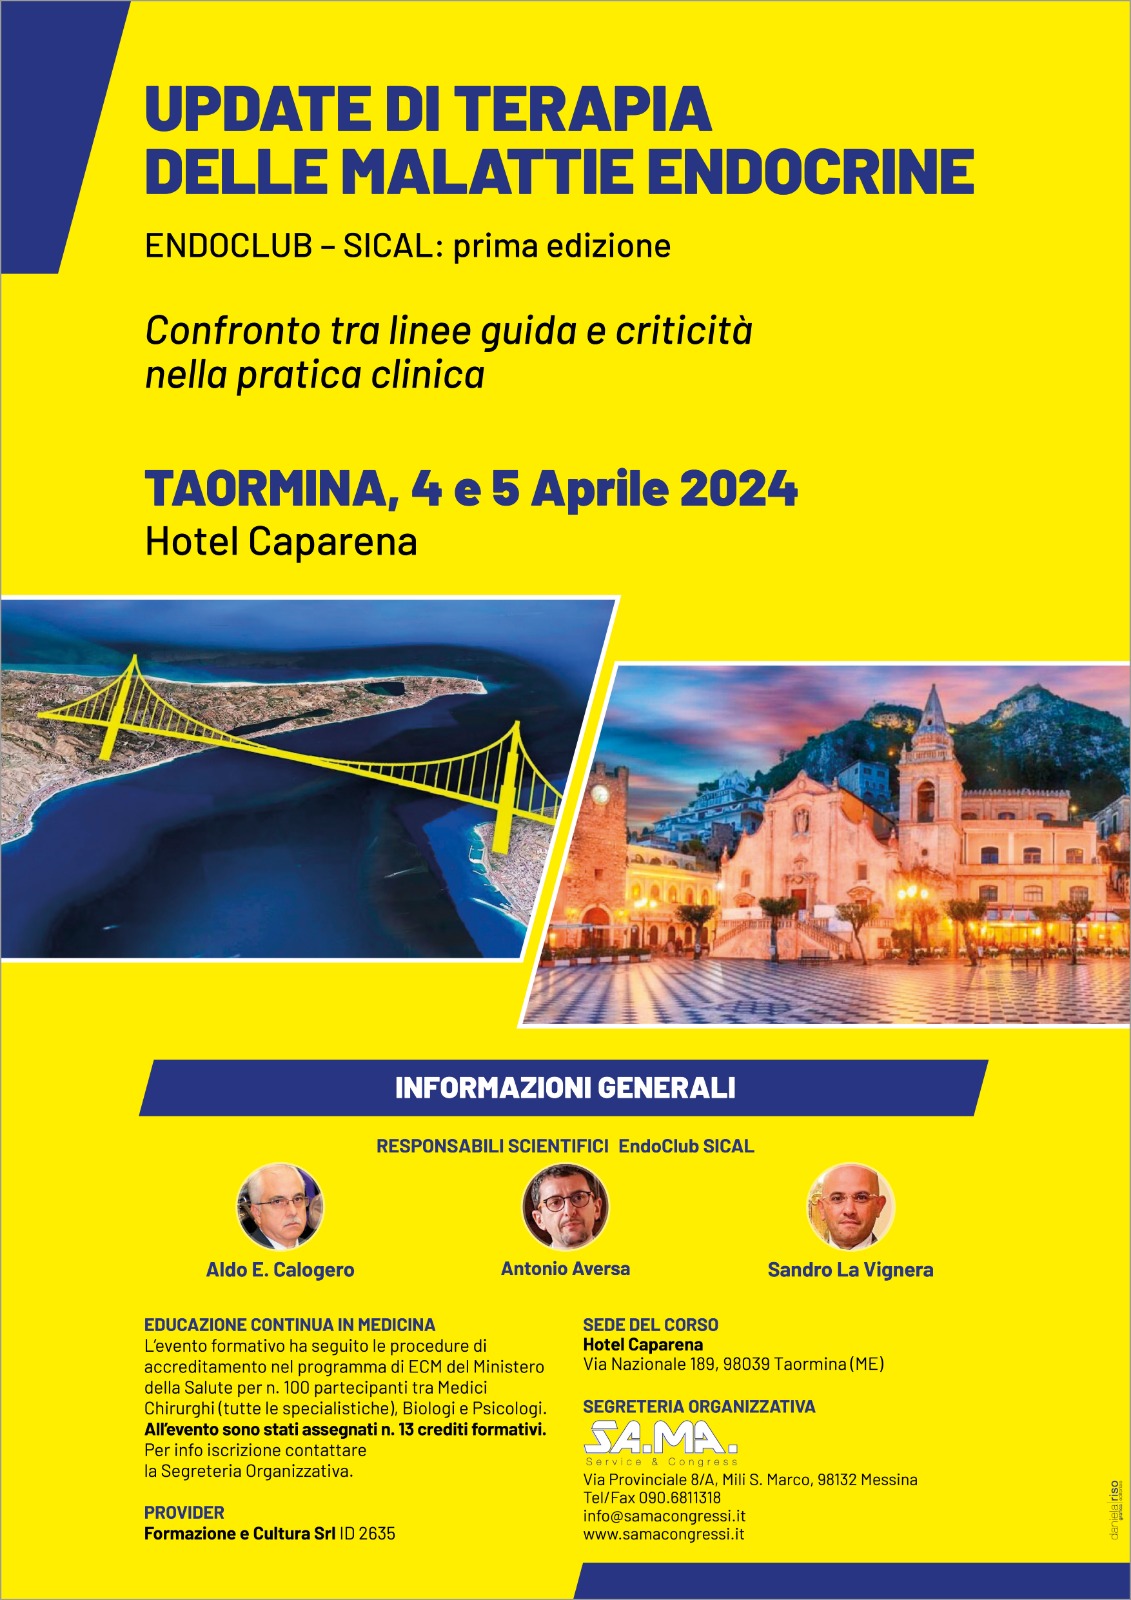 Seminario 4-5 aprile 2024 Hotel Caparena Taormina